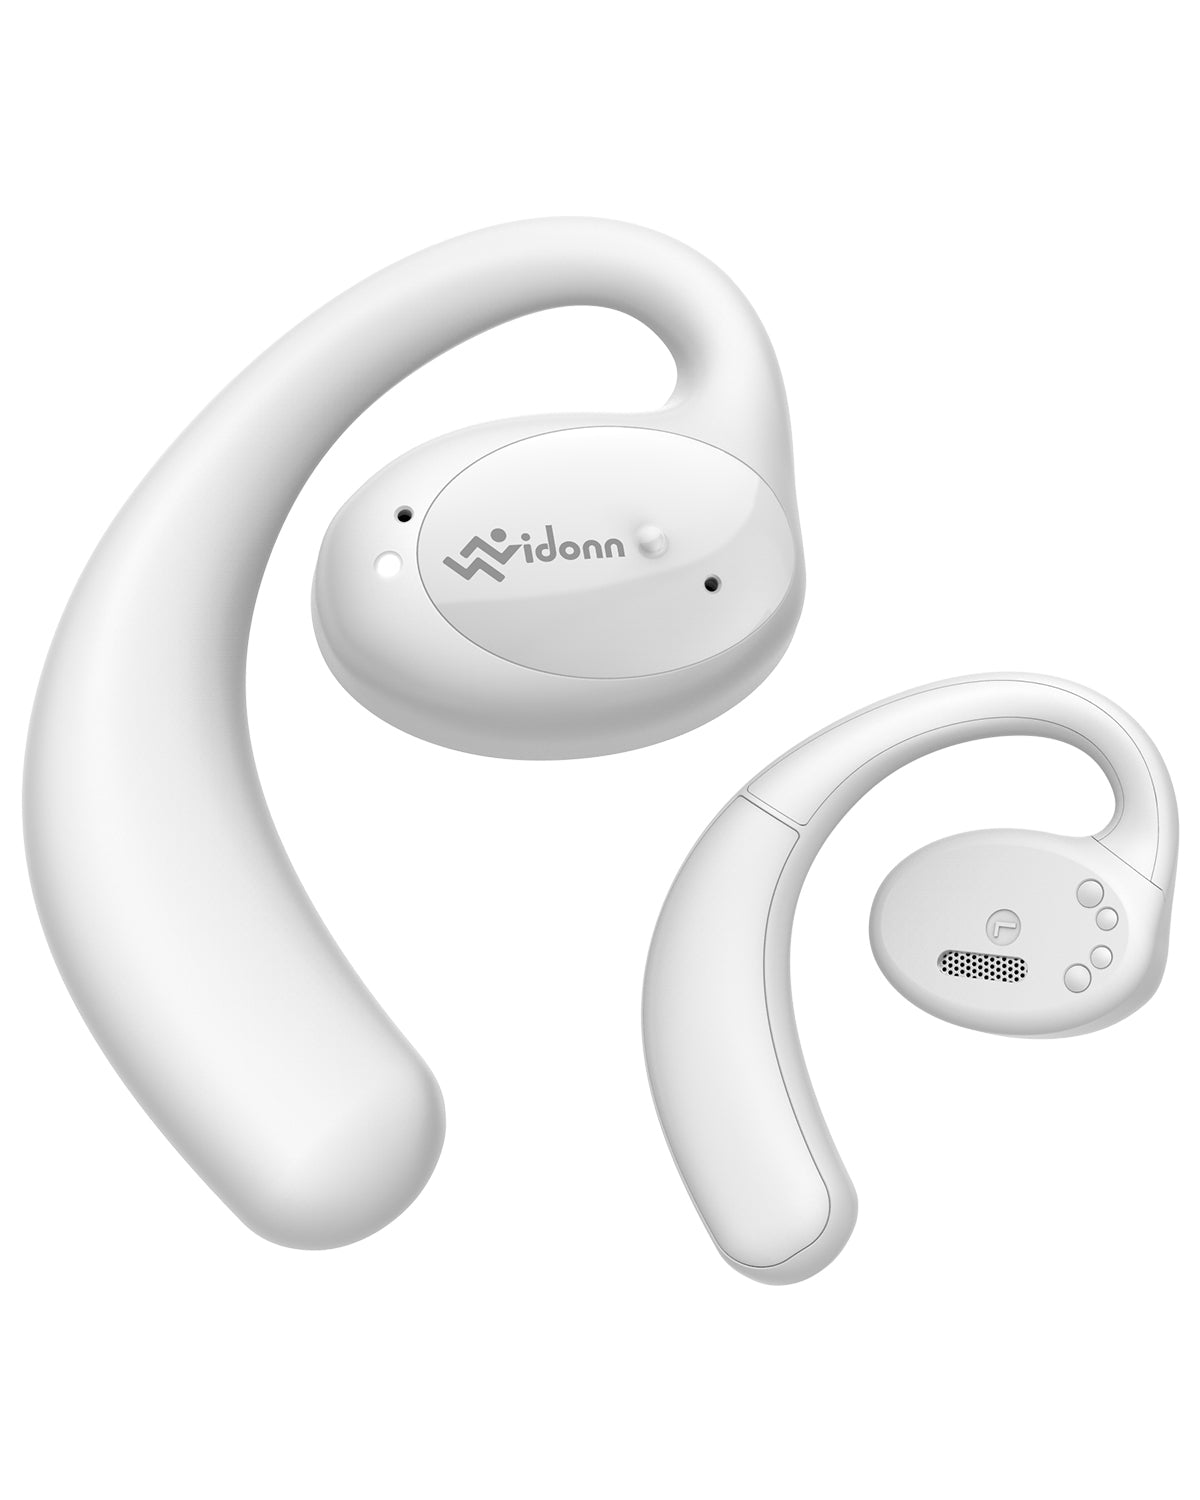 Vidonn T2 Open-Ear True Wireless Headphones Color White